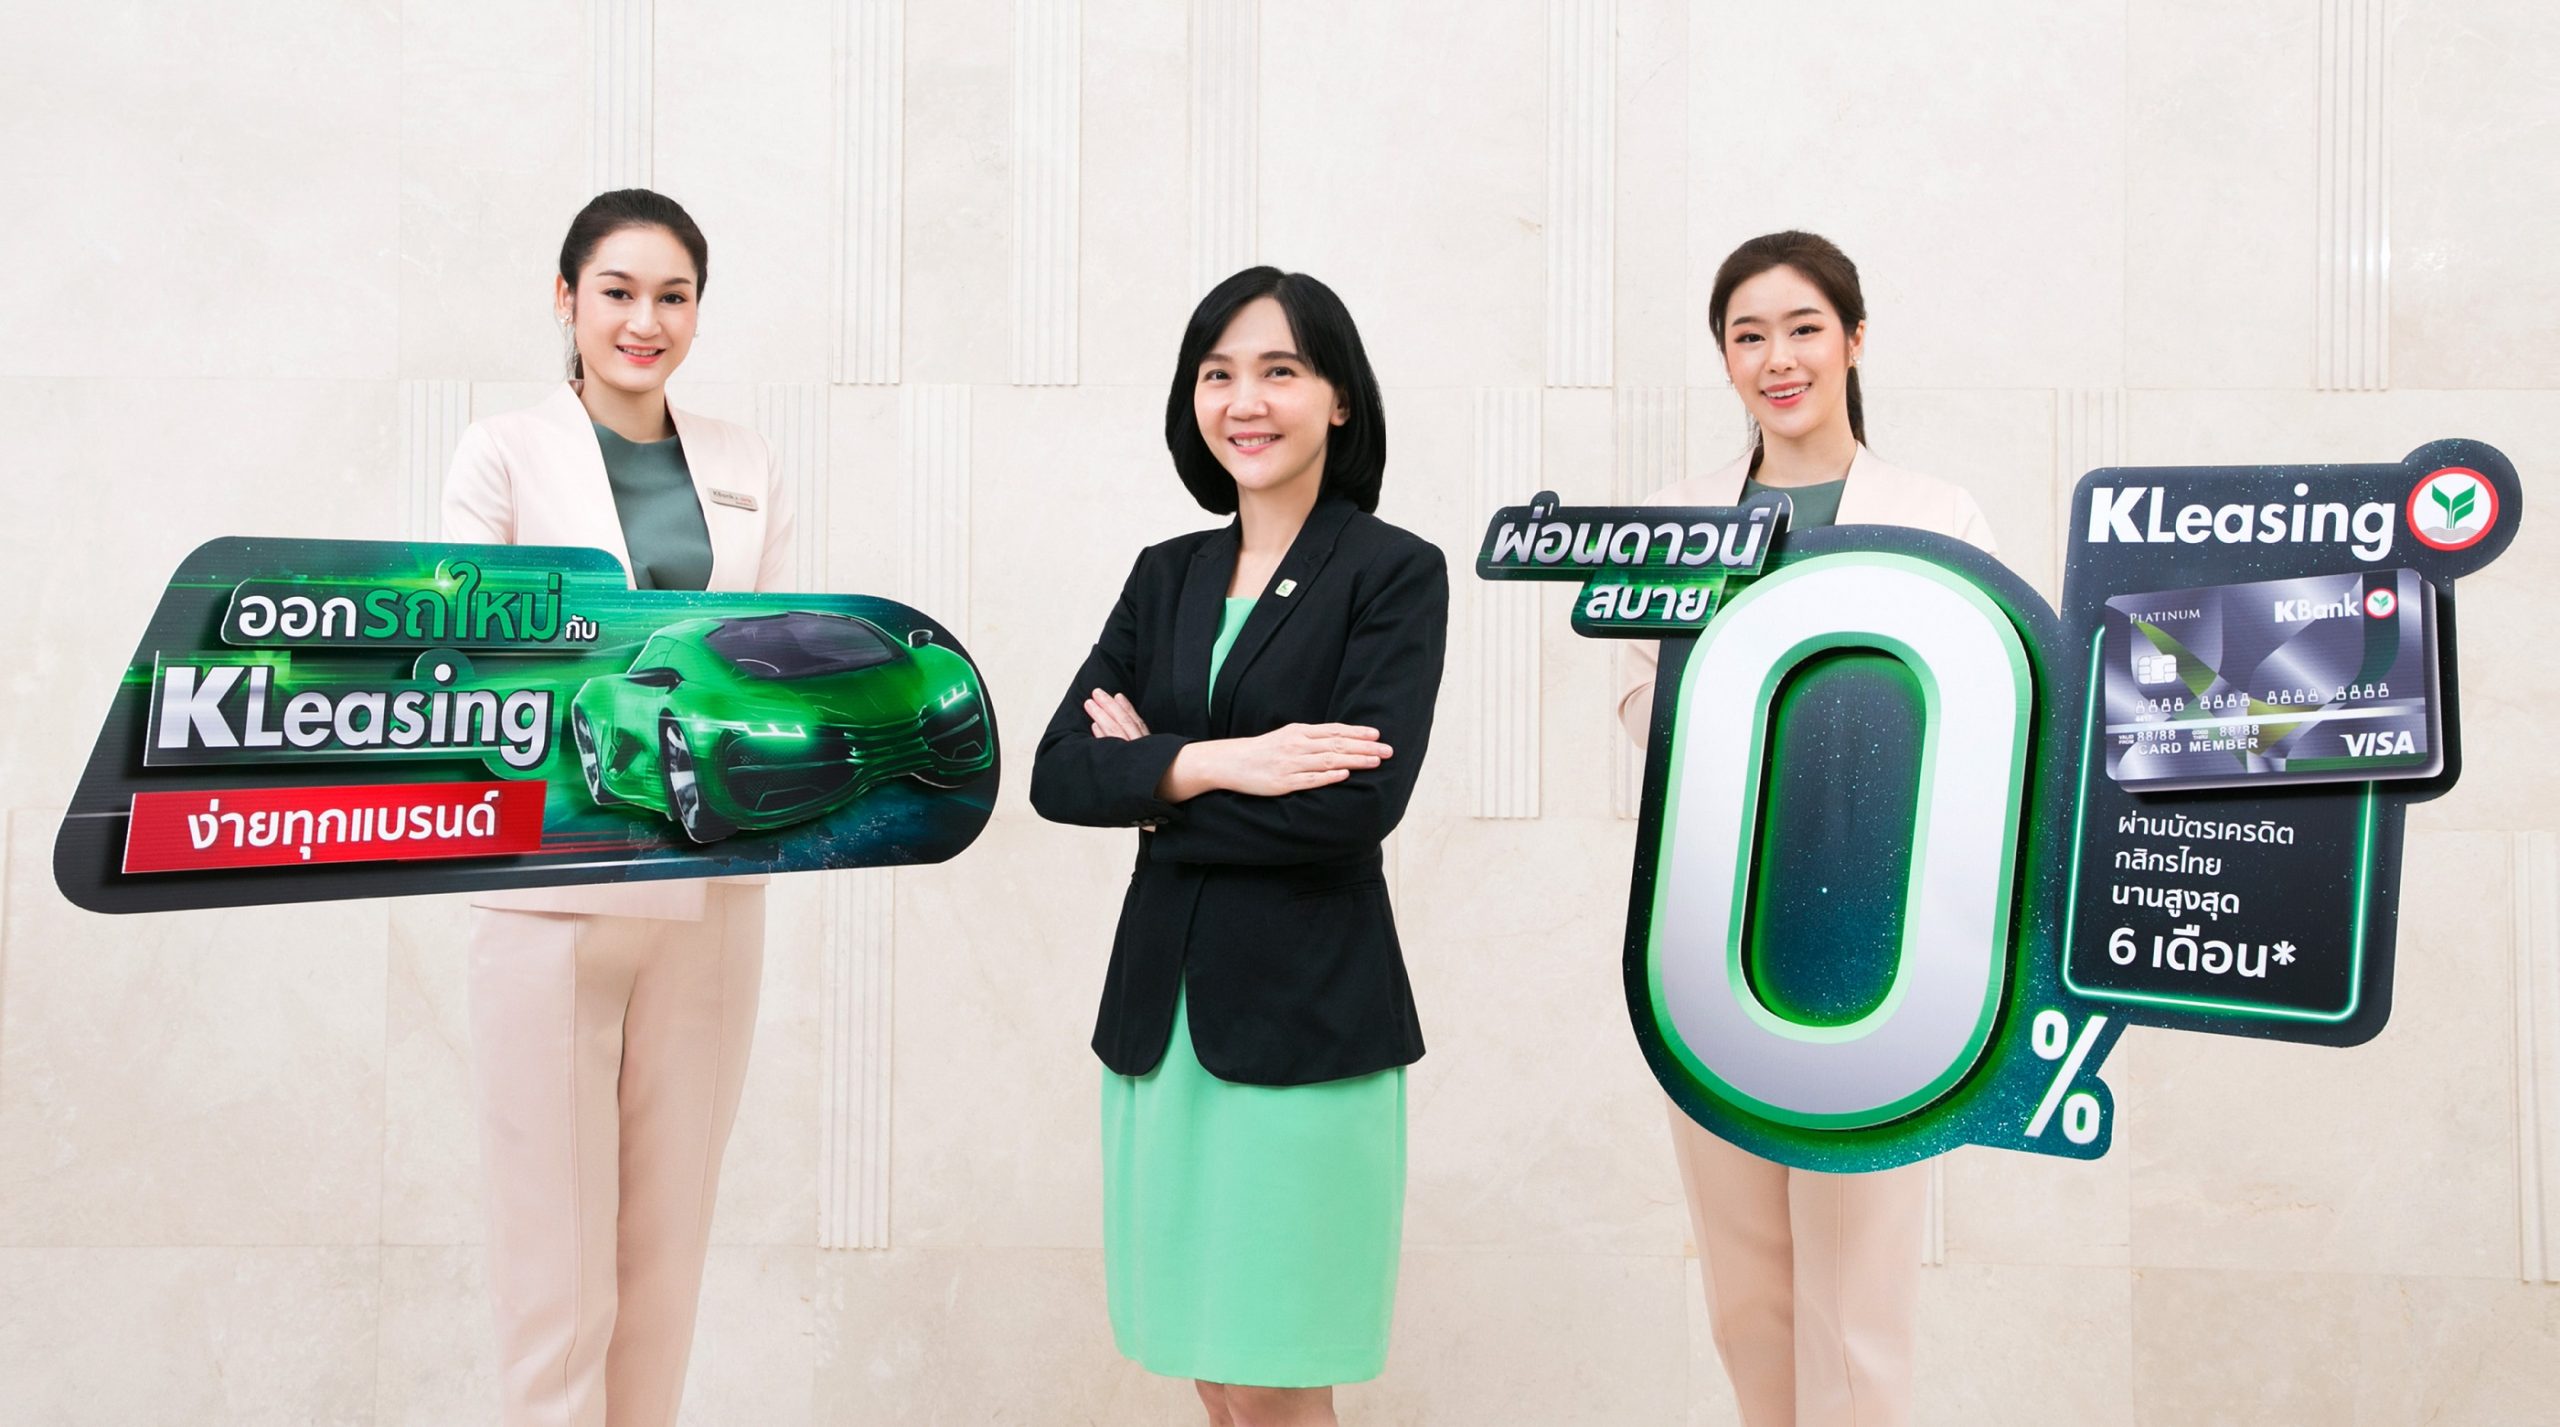 ภาพข่าว: ลีสซิ่งกสิกรไทย ออกแคมเปญรับงาน Motor Show 2020 รถใหม่ผ่อนดาวน์ 0% นาน 6 เดือน